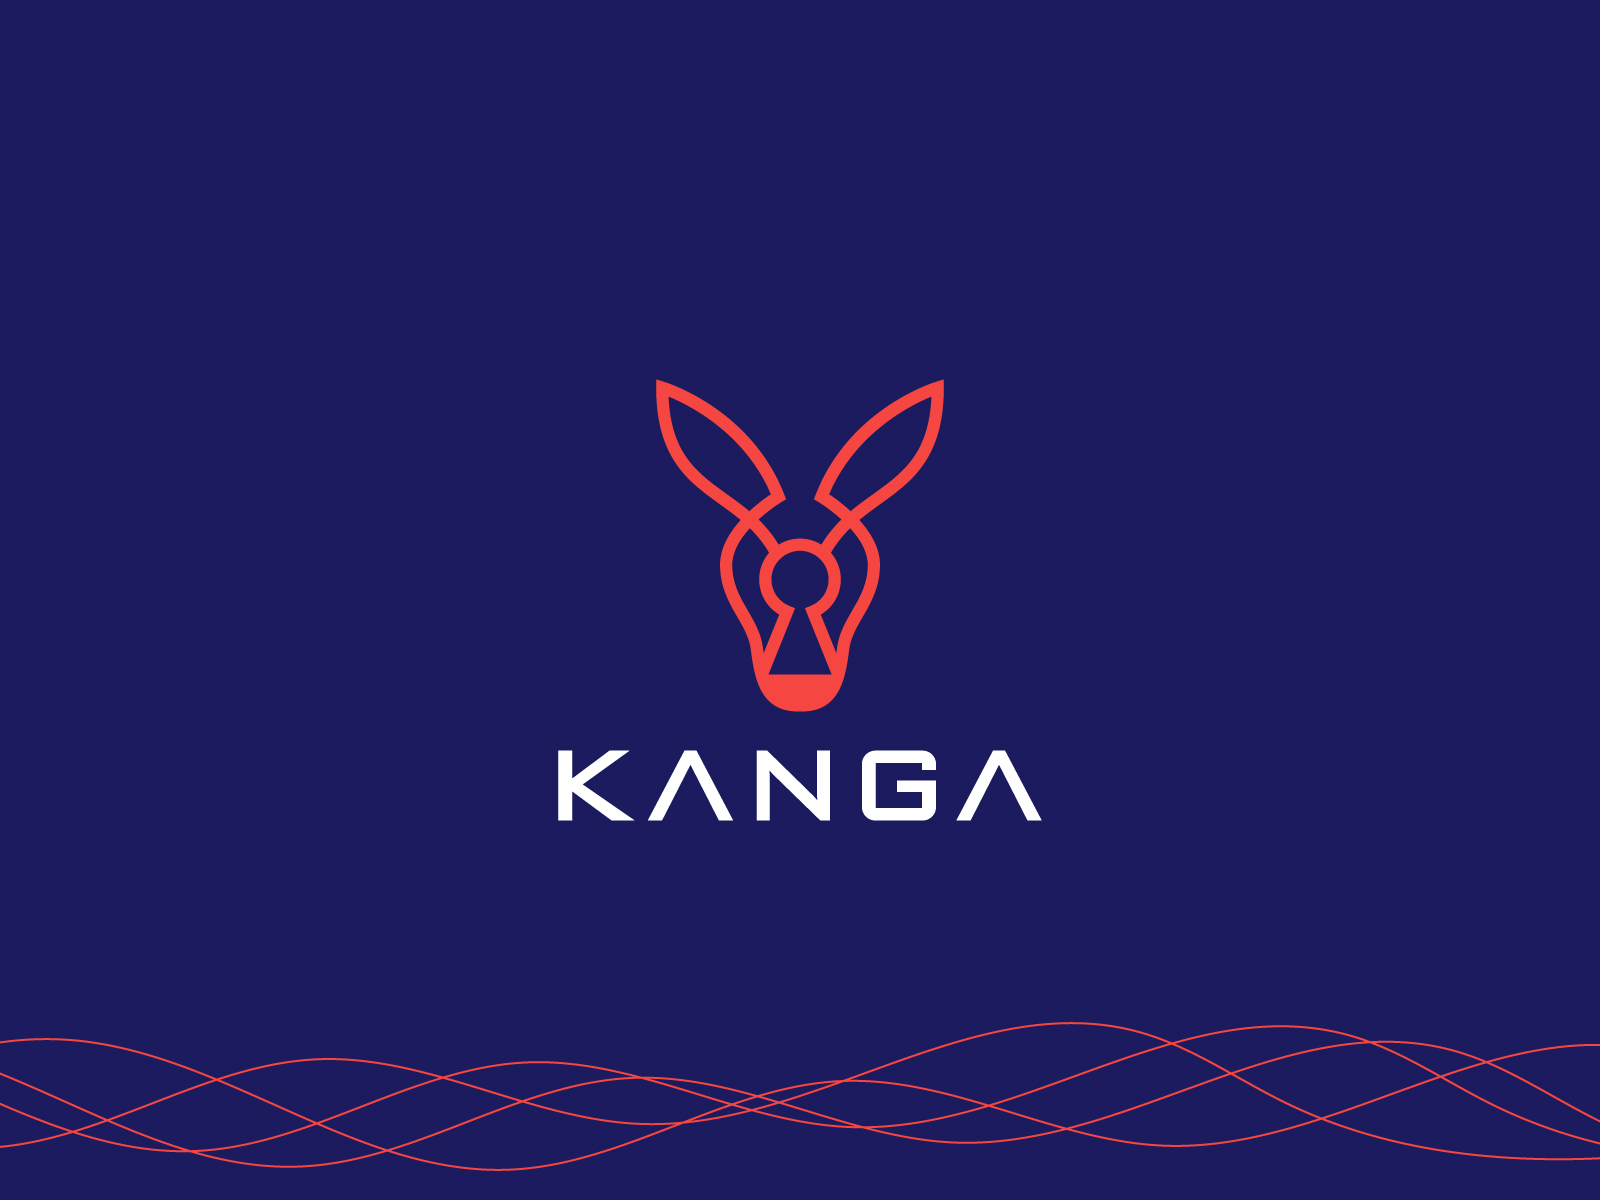 Kanga 1080P, 2K, 4K, 5K HD wallpapers free download | Wallpaper Flare